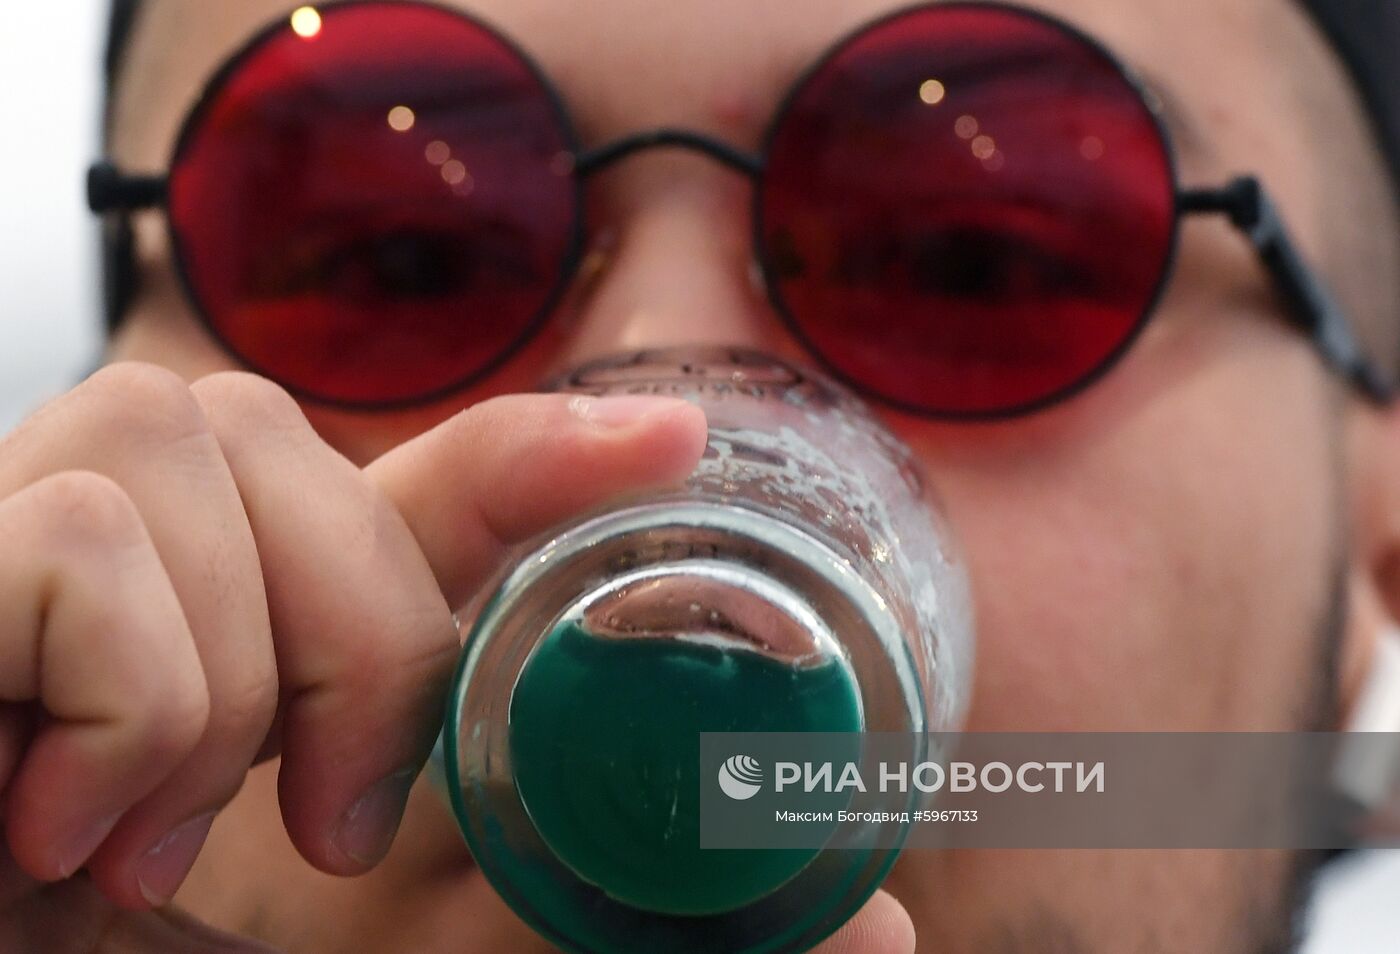 Фестиваль крафтового пива в Казани